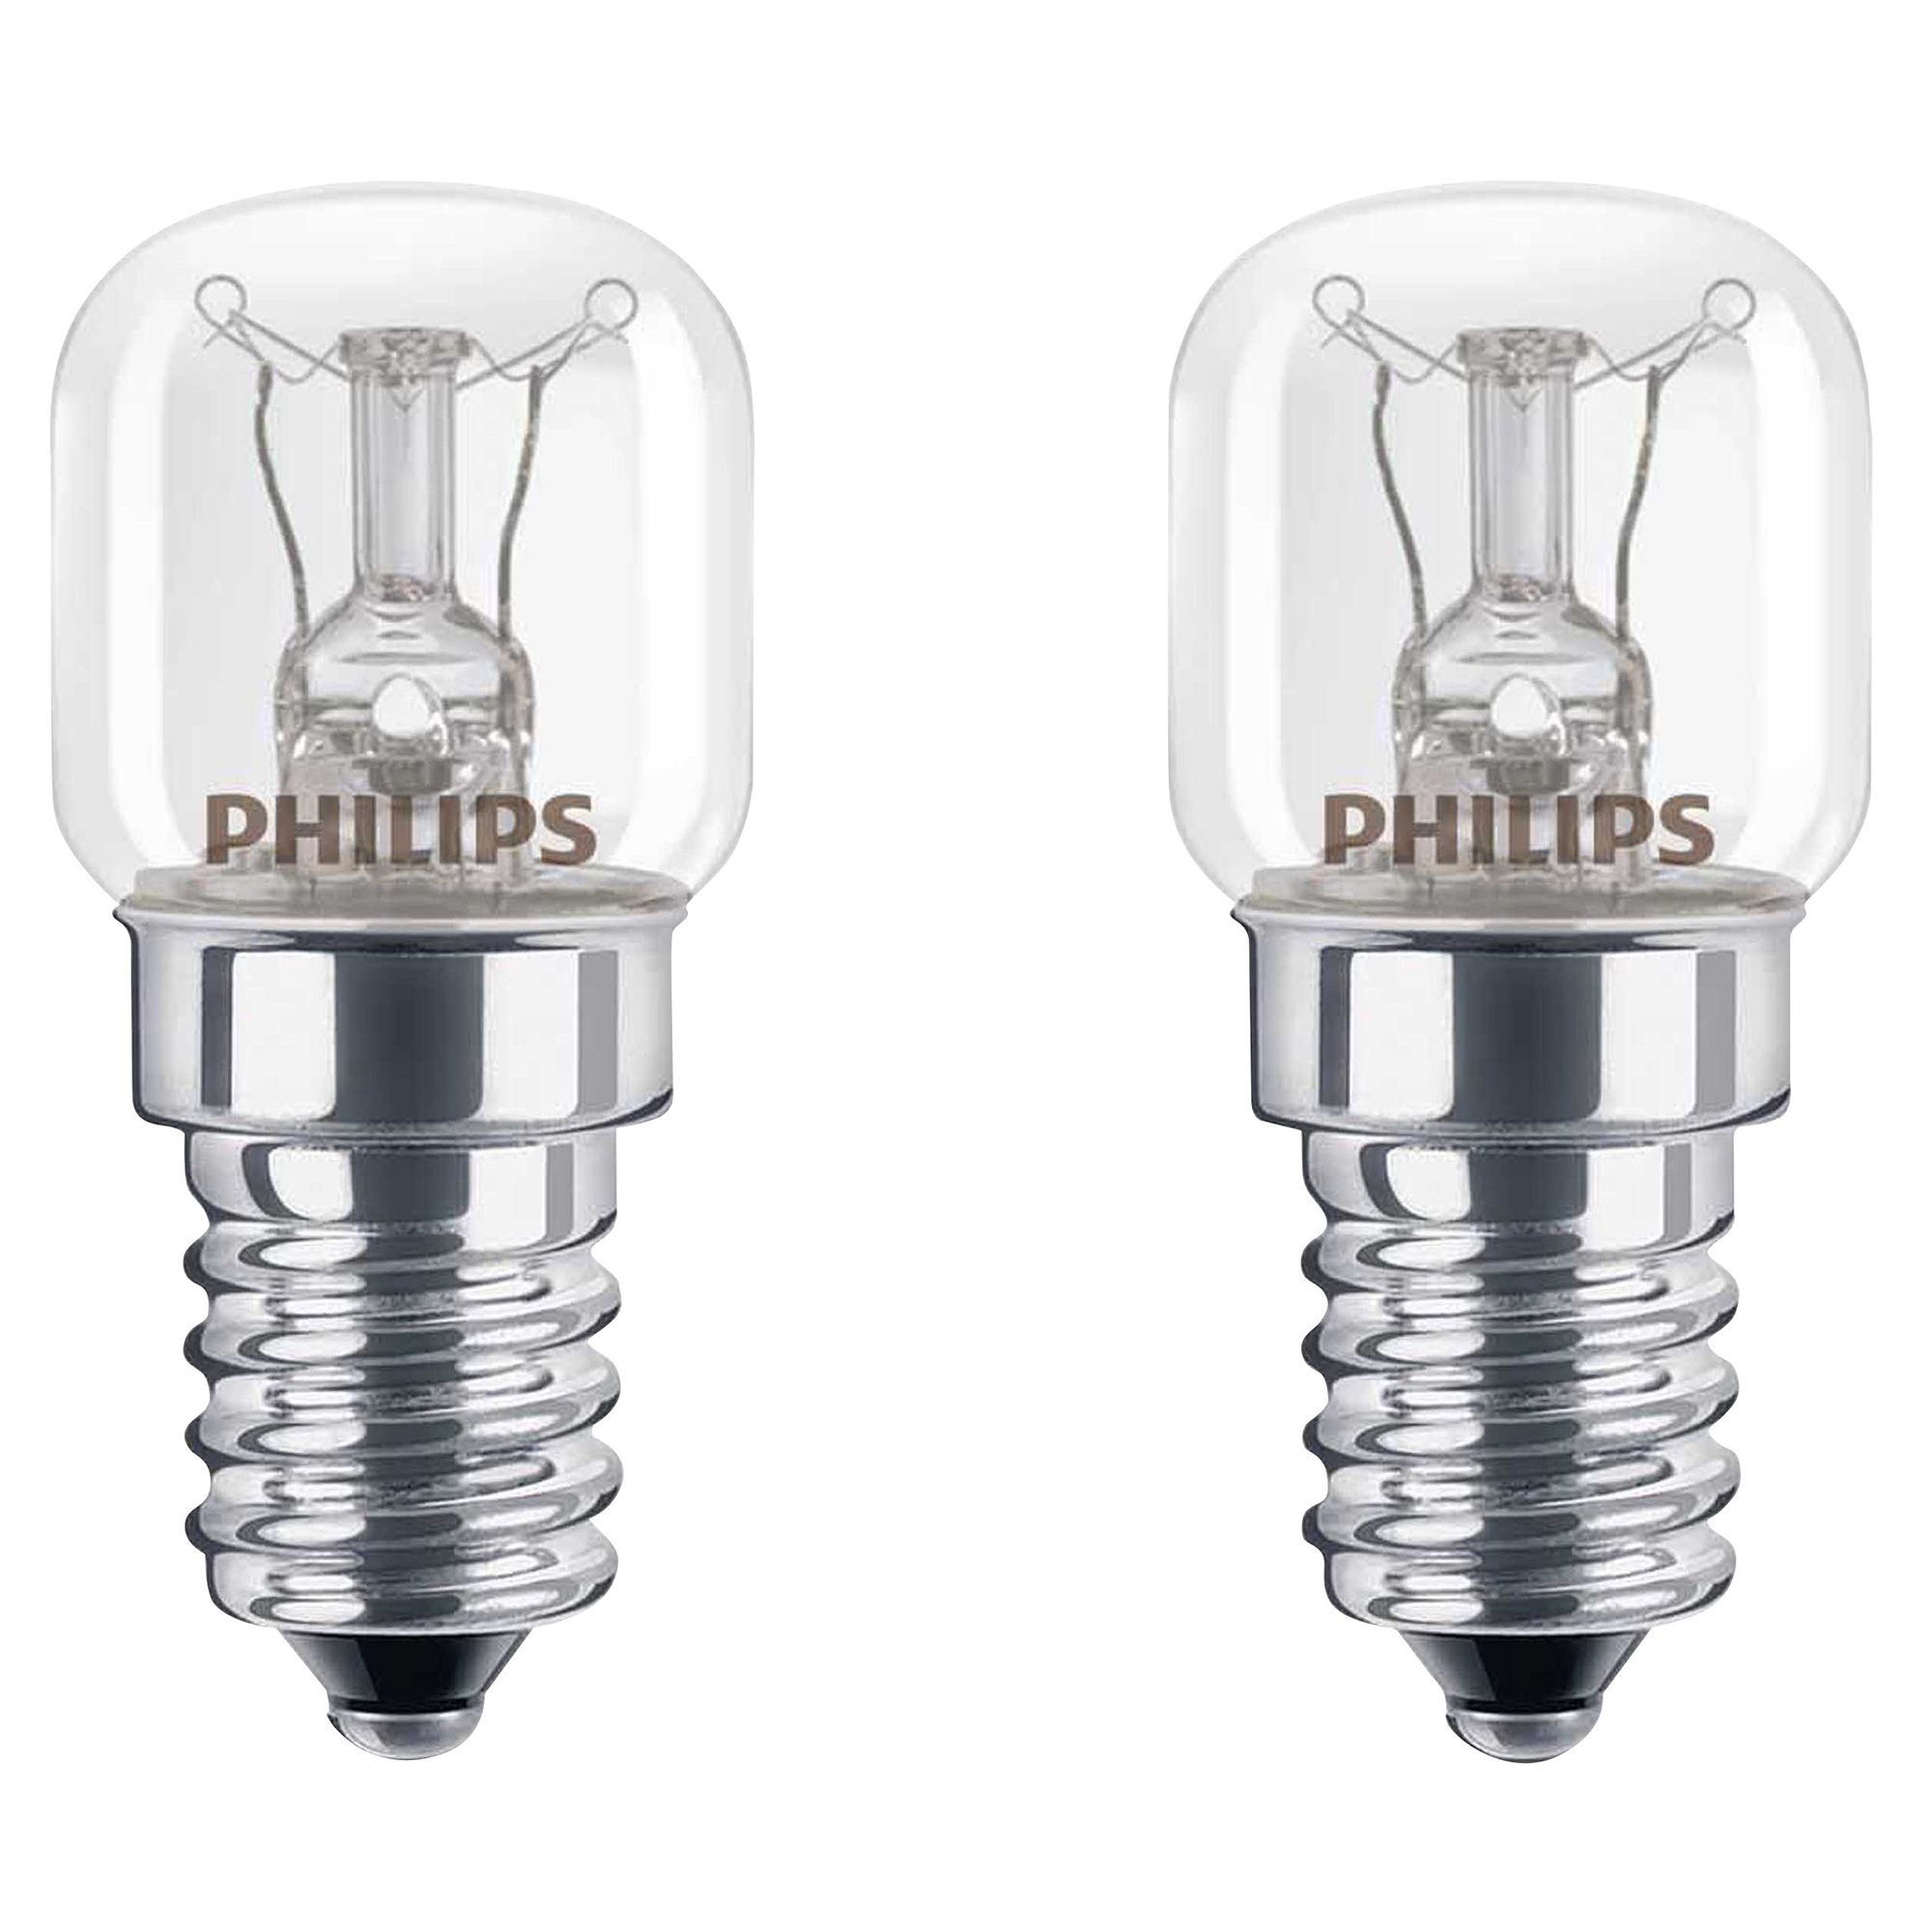 3 Pieces AC 220-230V Edison Bulb E14 15W Refrigerator Fridge Light